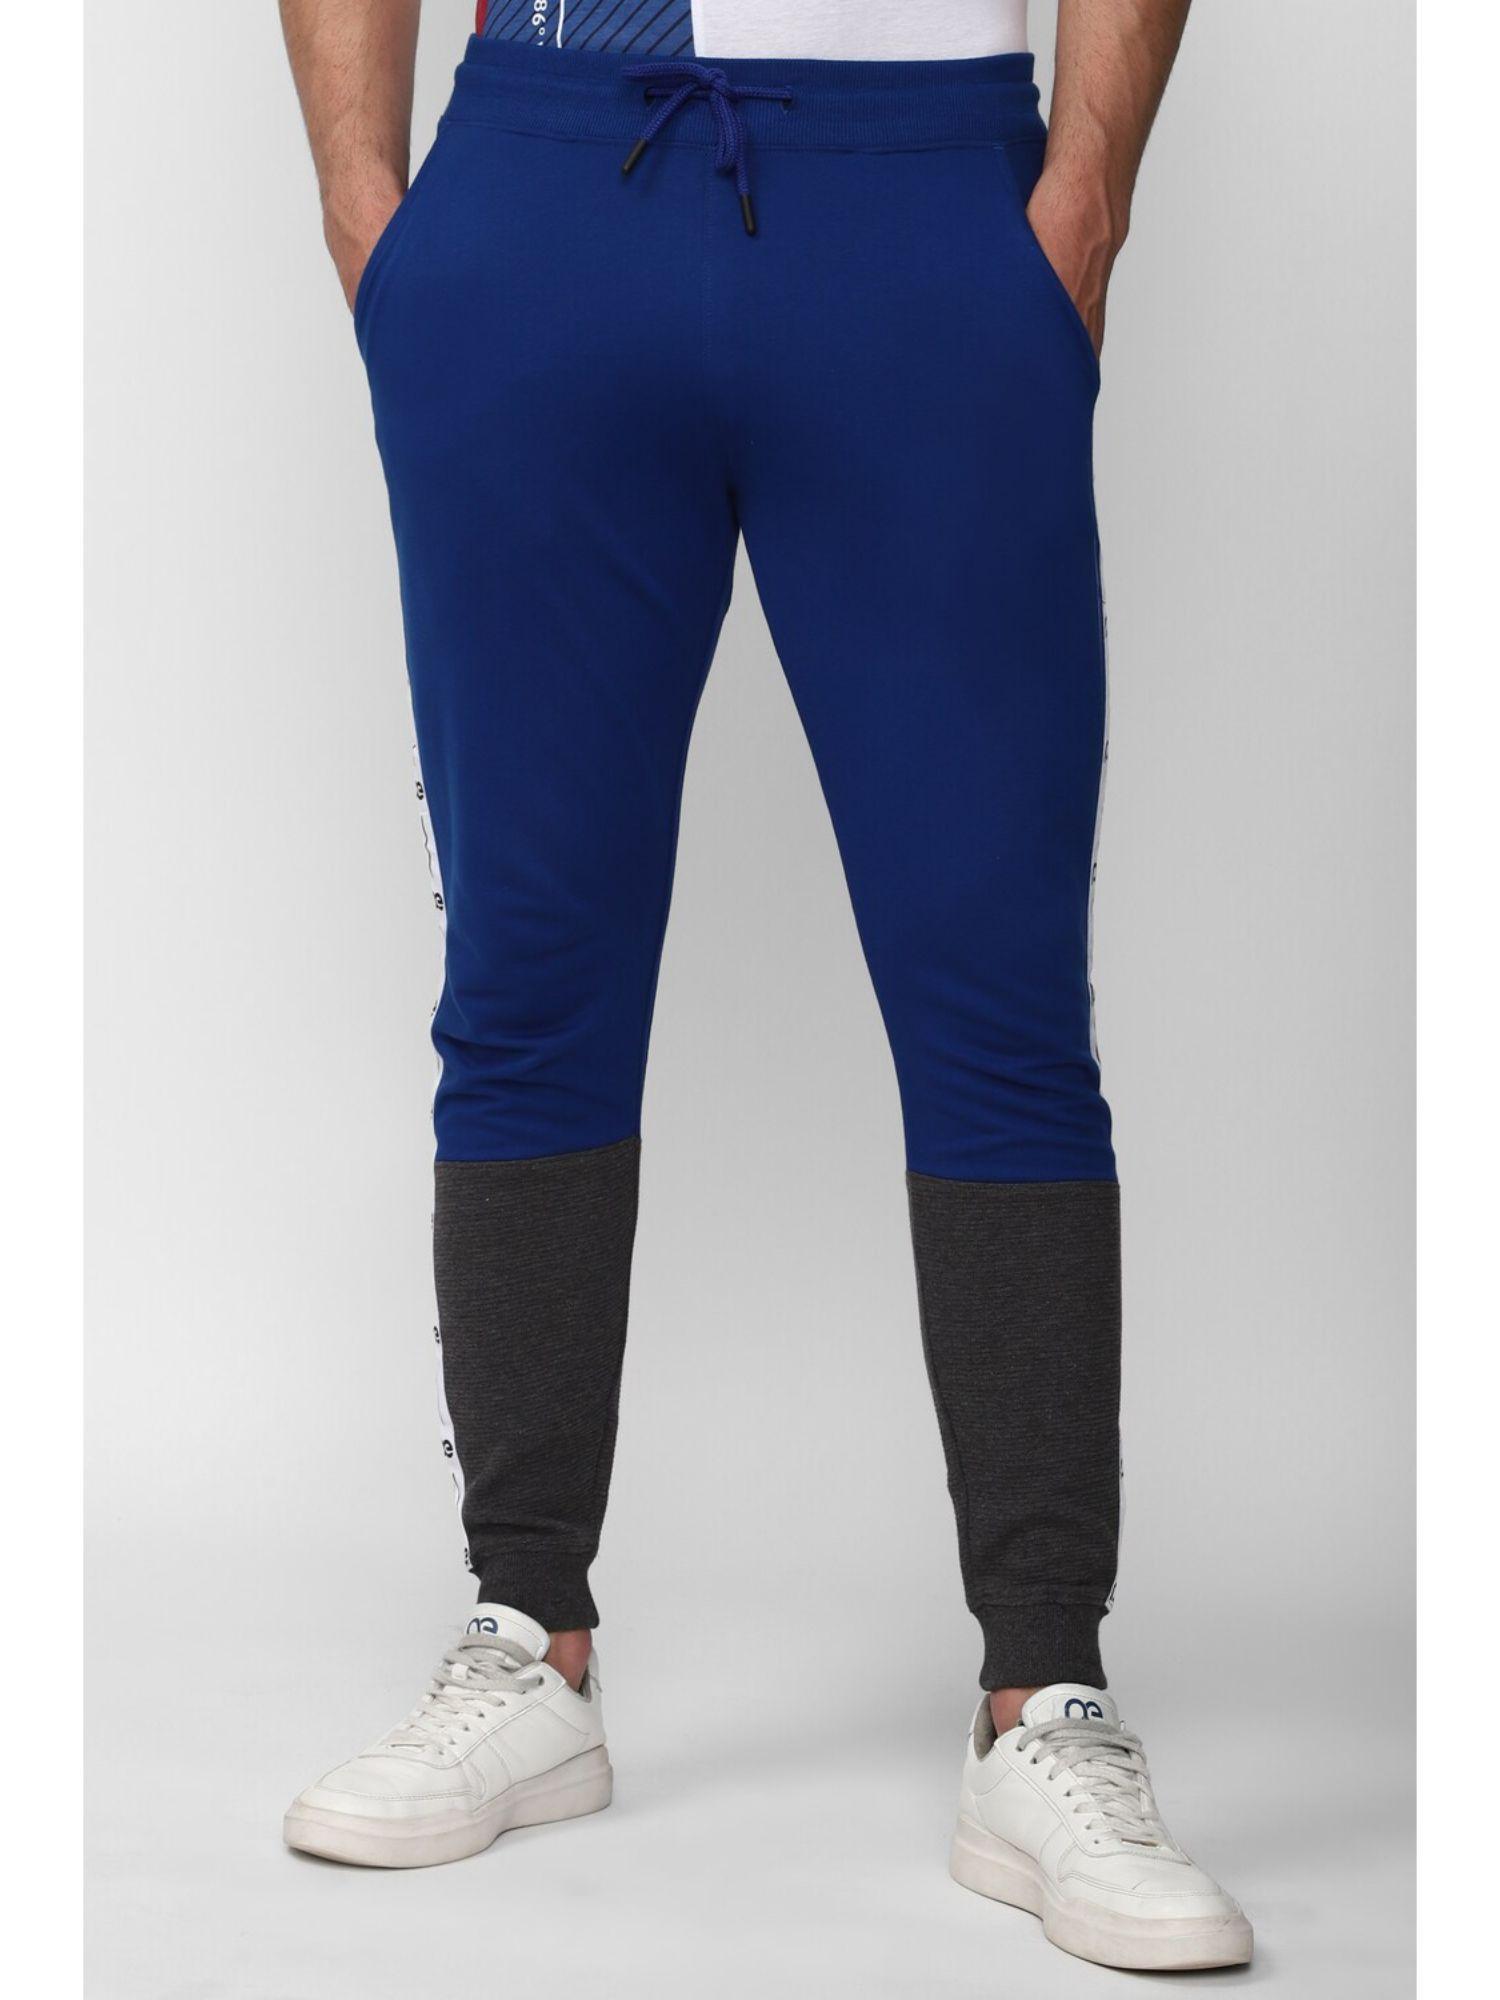 men-blue-print-casual-jogger-pants